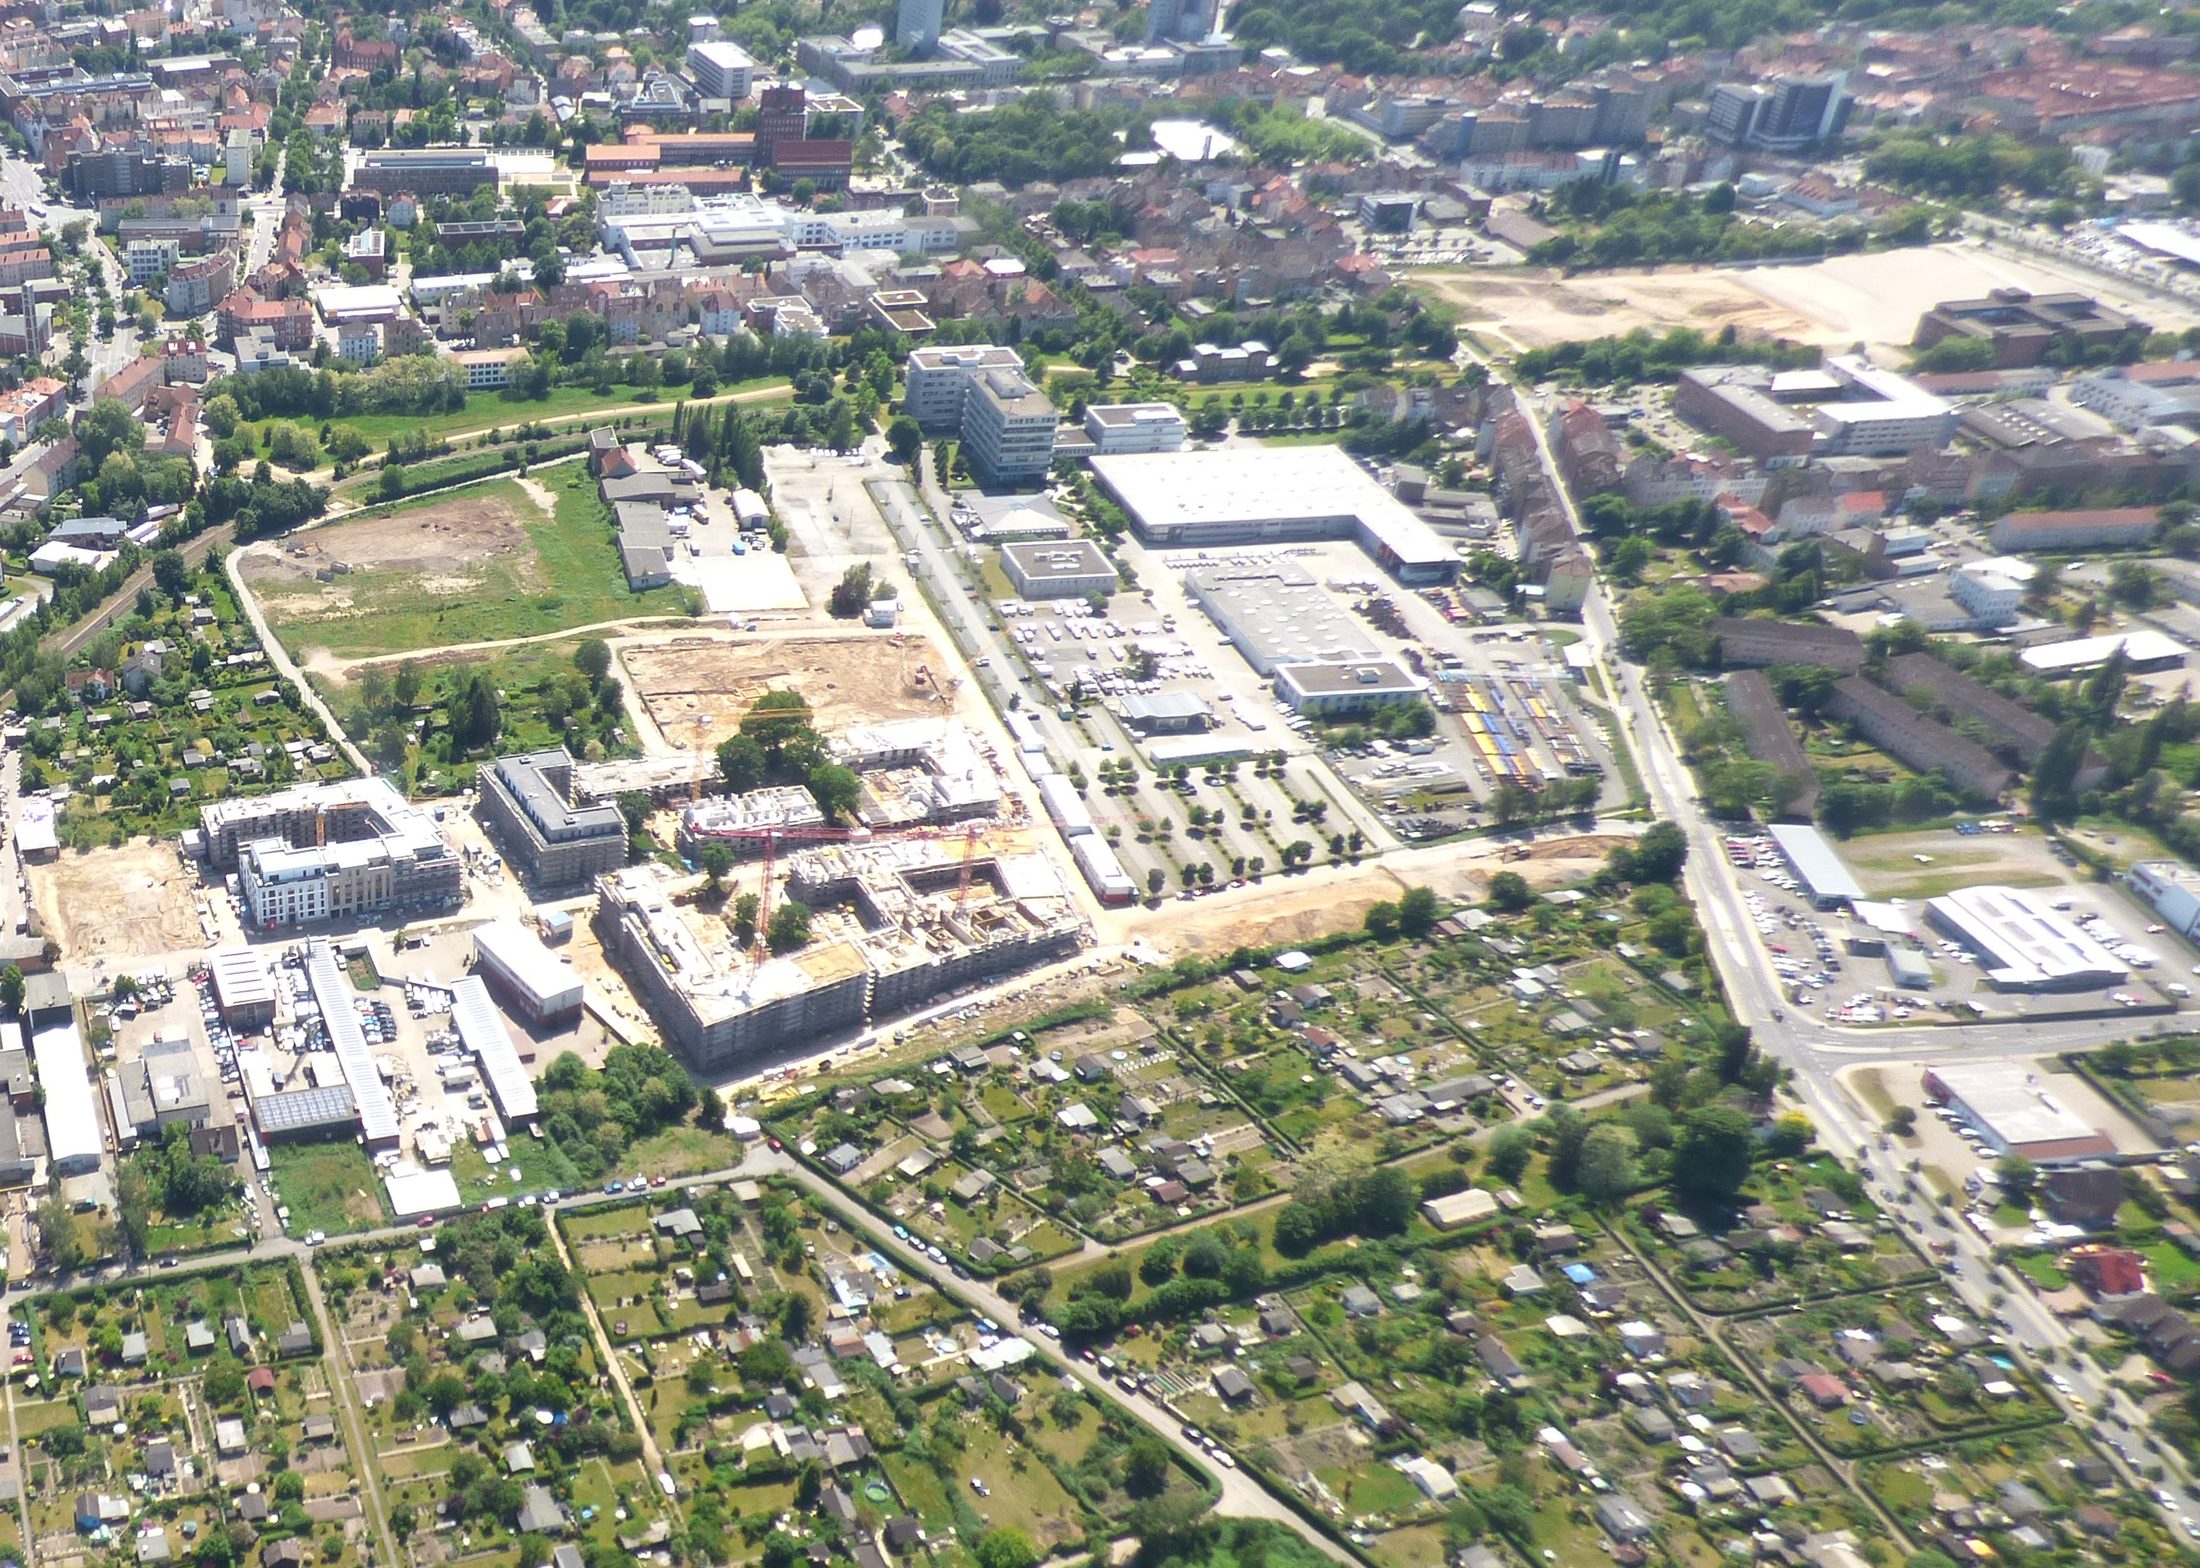 Luftbild Baugebiet Taubenstraße Mai 2018 (Wird bei Klick vergrößert)